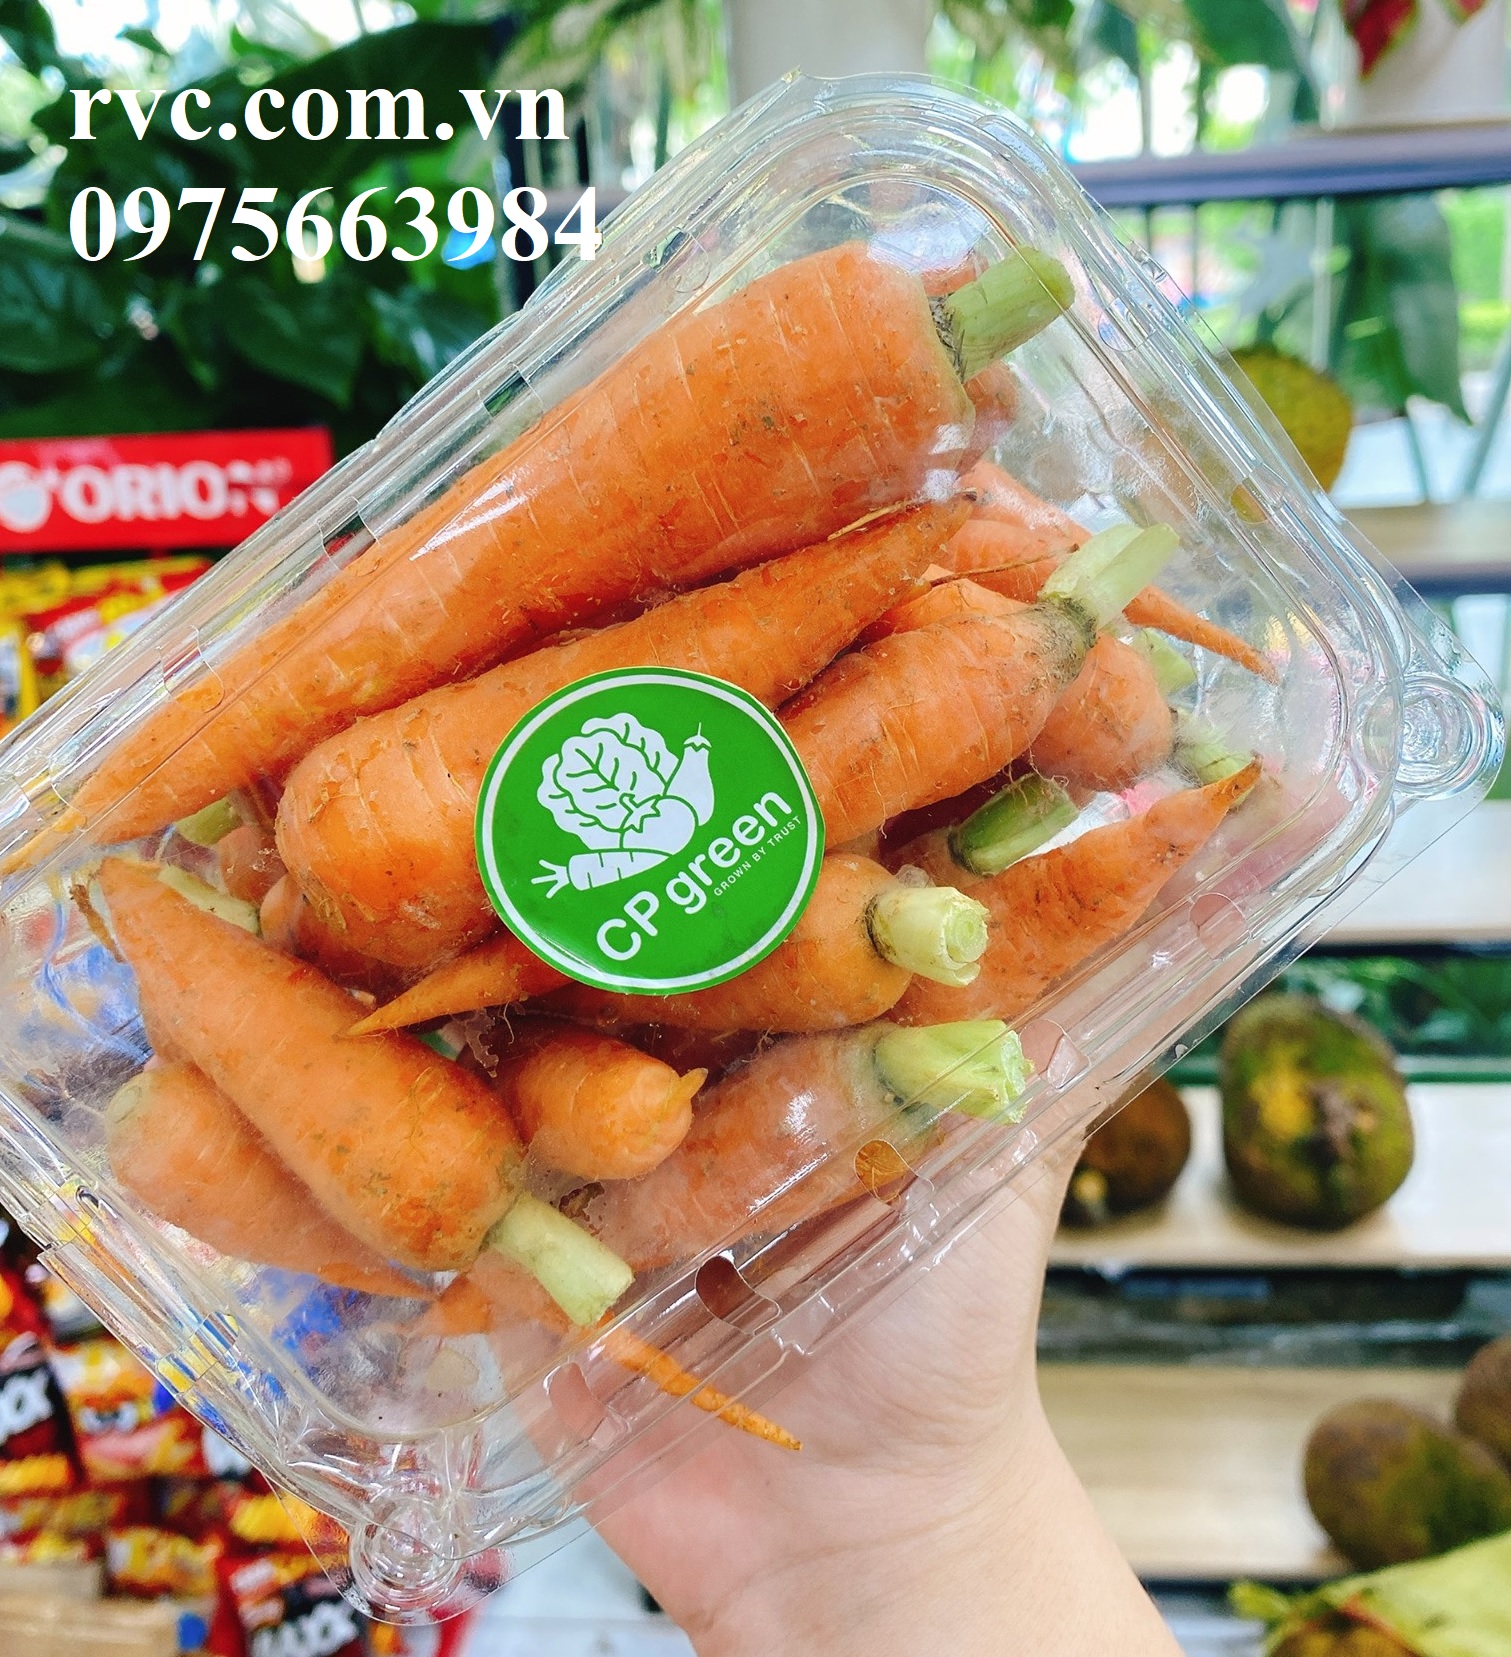 hộp-nhựa-đựng-trái-cây-500g - Hộp nhựa P500B đựng 500g hoa quả sử dụng 1 lần chuyên cung cấp vào siêu thị  1800724994572759552